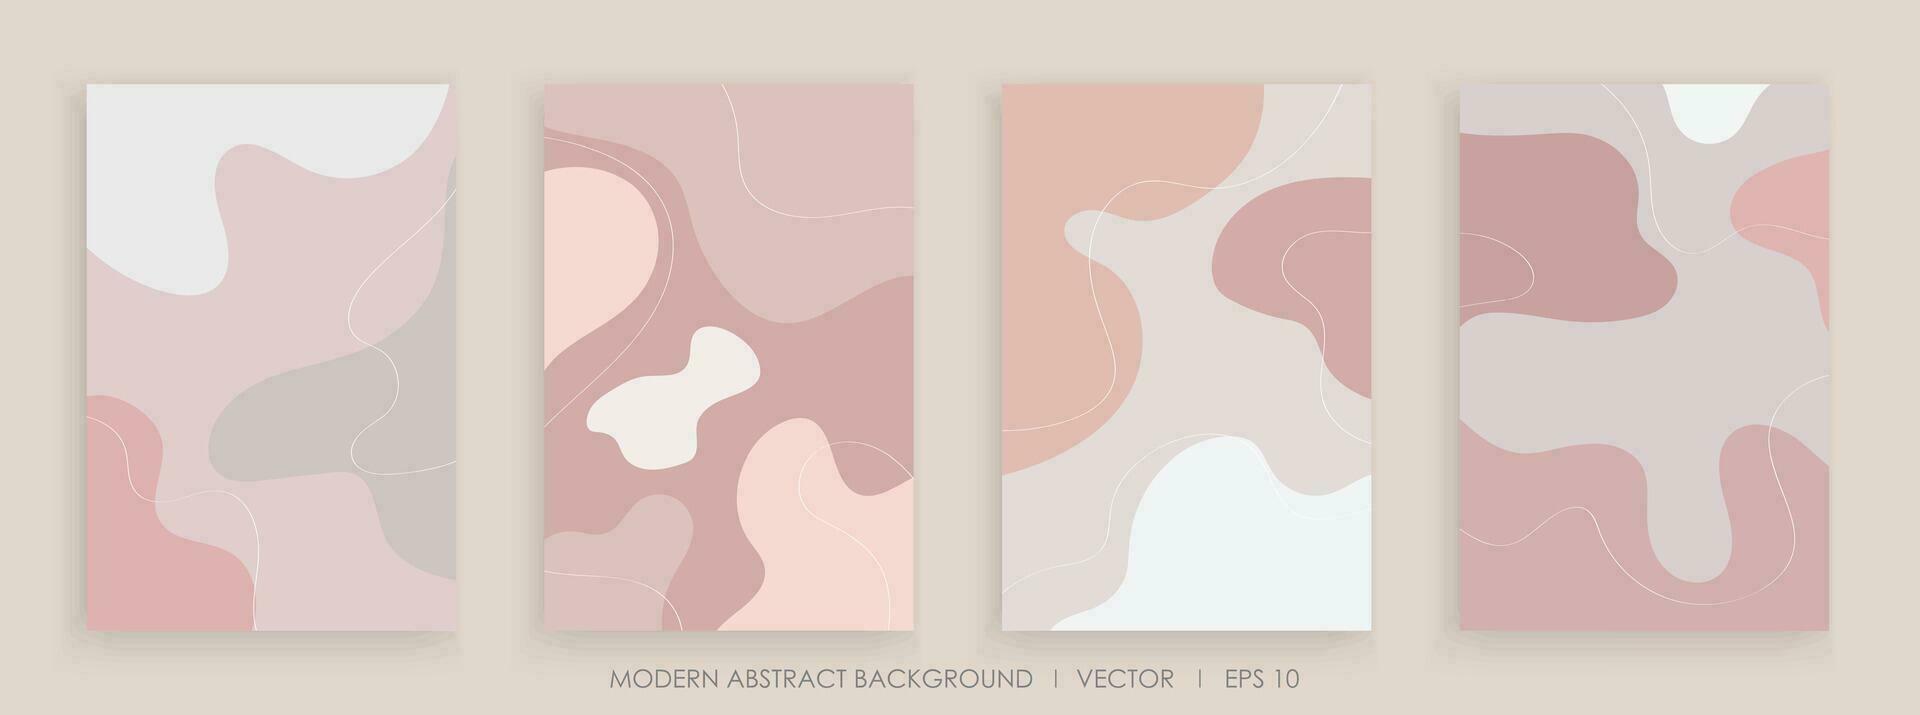 modern abstrakt kreativ Hintergründe mit wellig Formen und Linie bunt Farben Design vektor